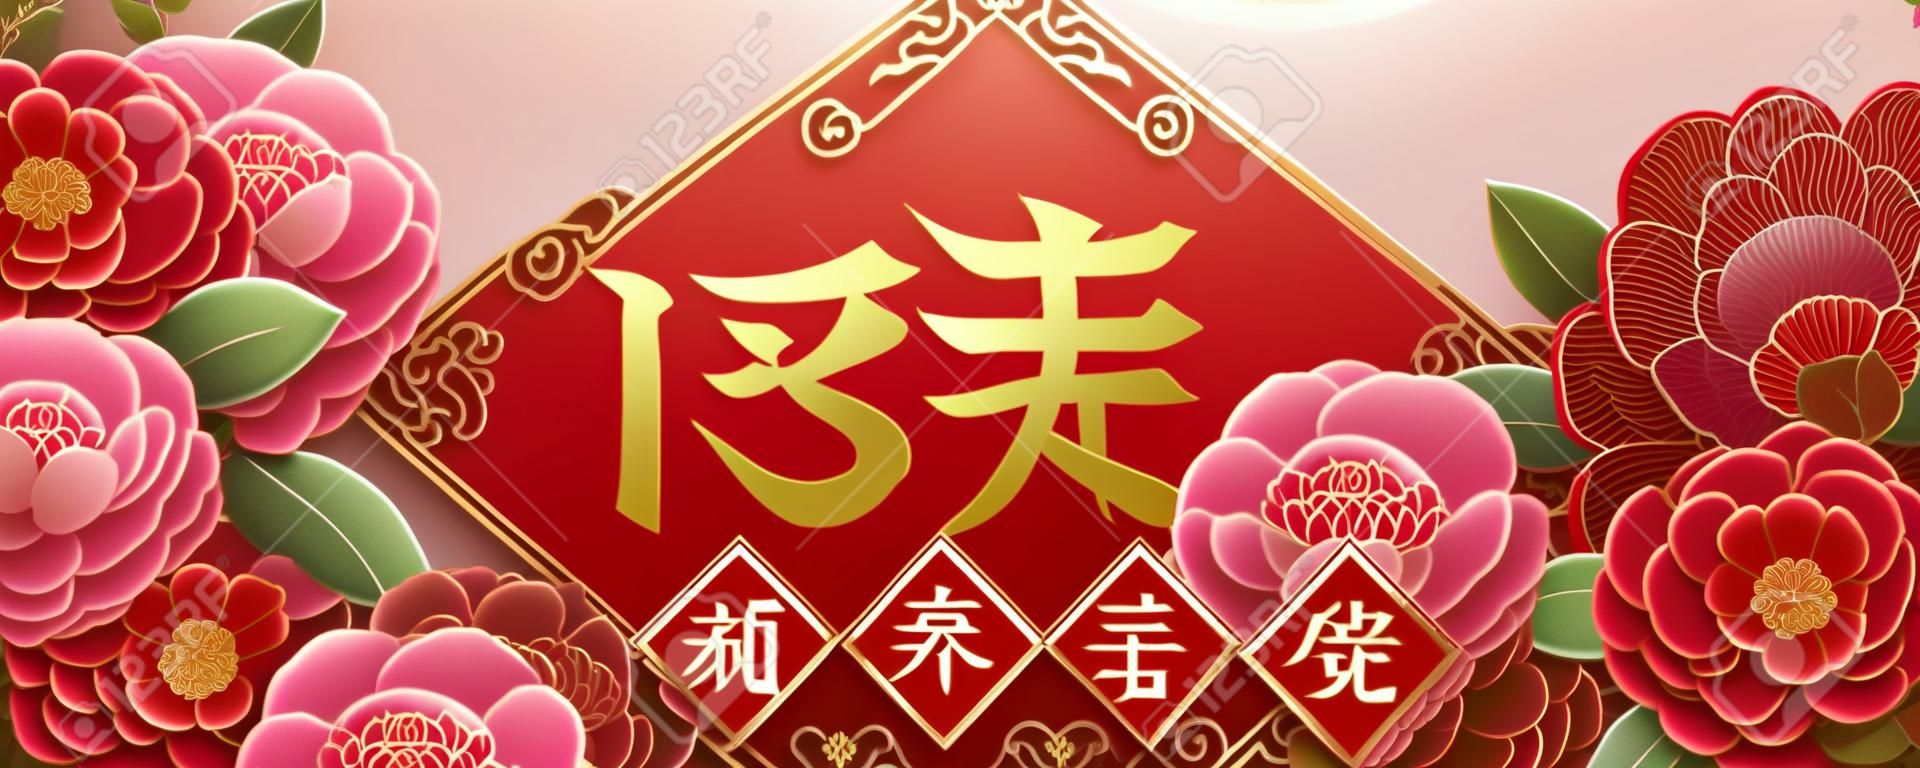 Maanjaar ontwerp met prachtige pioenbloemen, Lente geschreven in Chinees woord in het midden